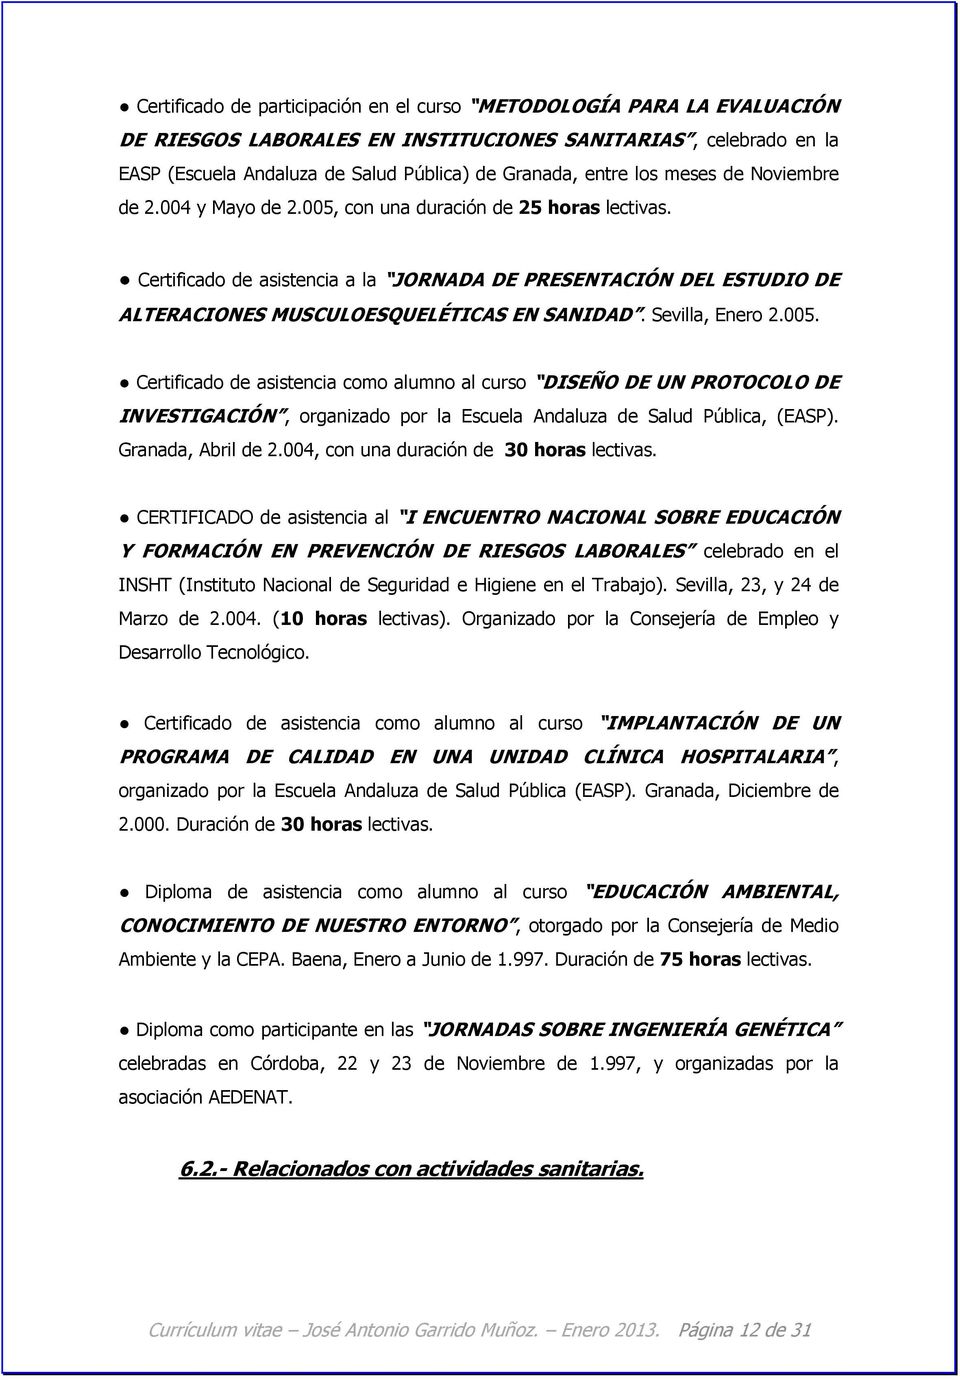 Certificado de asistencia a la JORNADA DE PRESENTACIÓN DEL ESTUDIO DE ALTERACIONES MUSCULOESQUELÉTICAS EN SANIDAD. Sevilla, Enero 2.005.